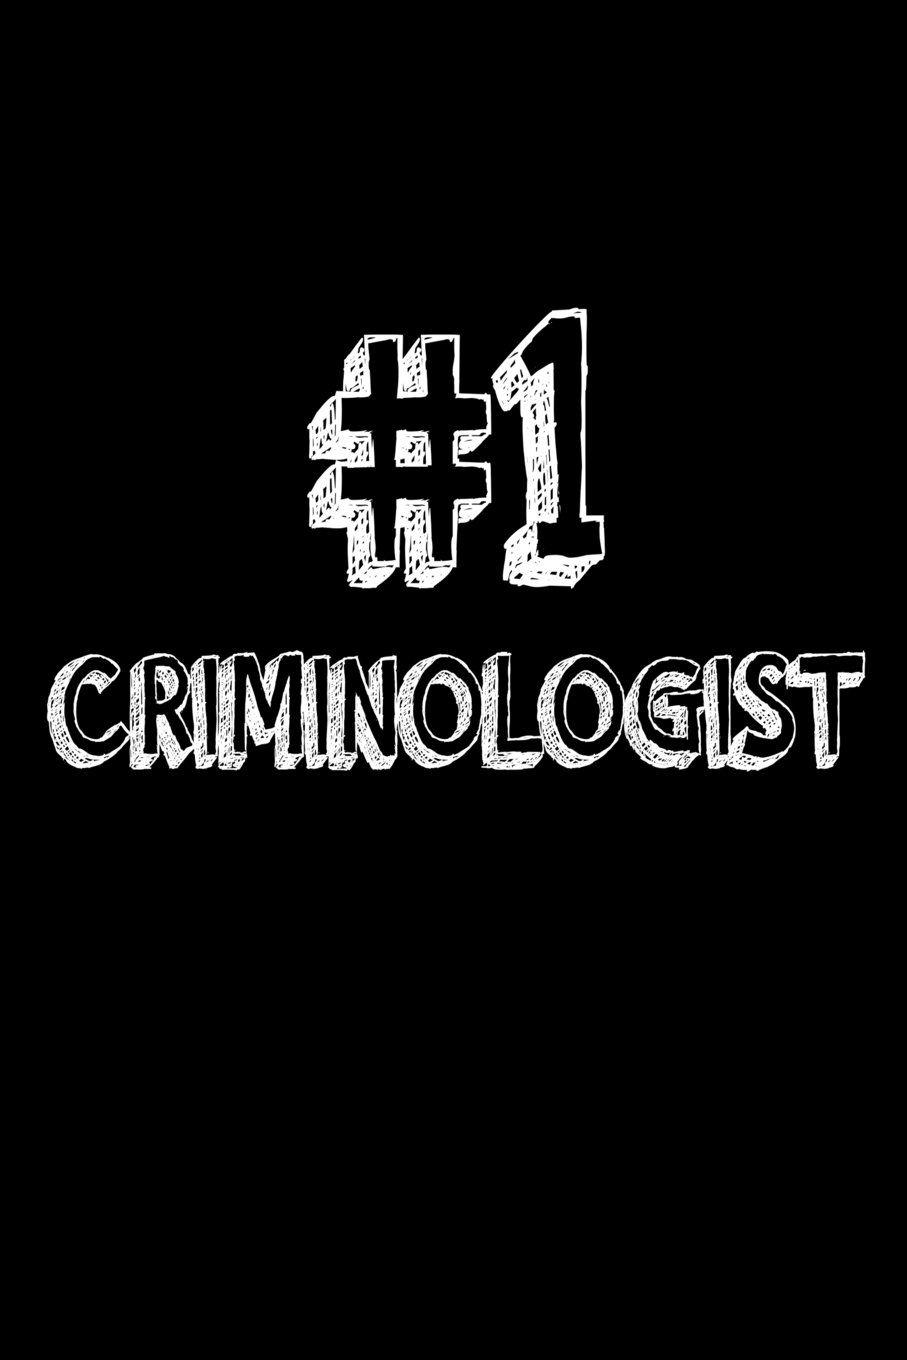 Criminologist Logo - 1 Criminologist: Best Criminologist Ever Appreciation Gift Notebook ...